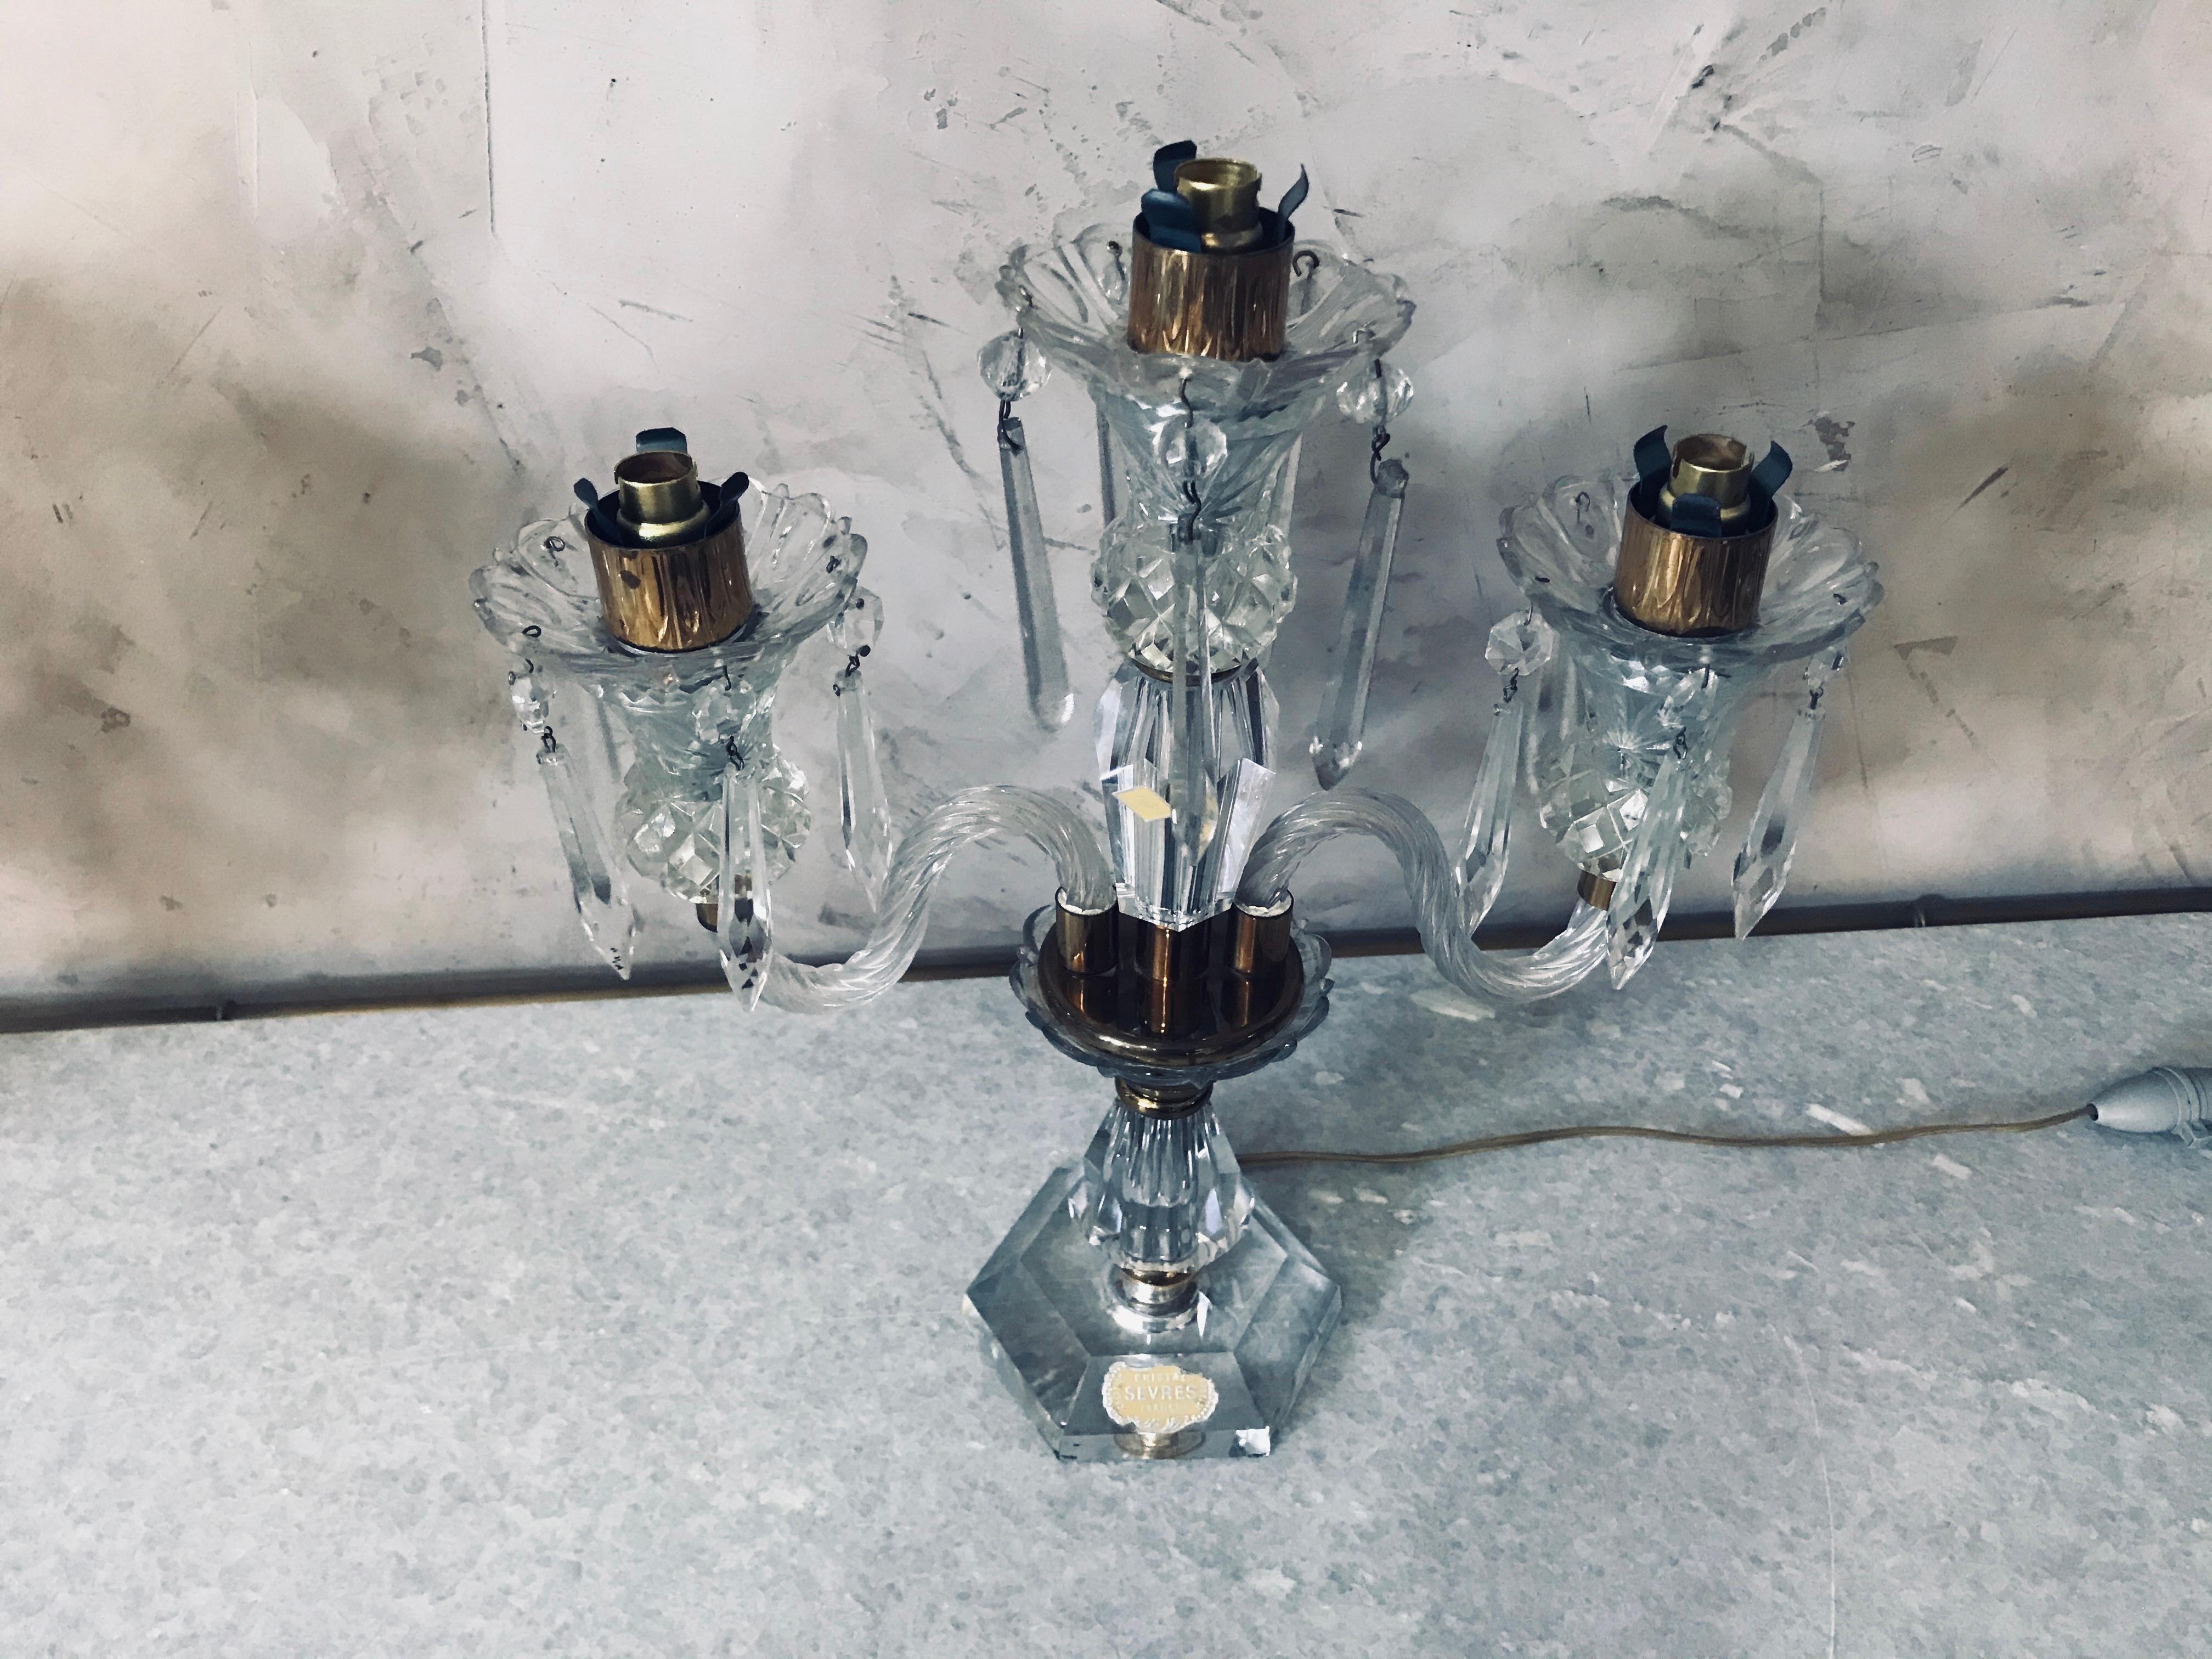 Schönes Paar französischer Sèvres-Kandelaber aus Kristall und Messing aus den 1950er Jahren.
Hergestellt in Frankreich von der berühmten Cristallerie House Sèvres. 
Dieses Kandelaberpaar steht unter Strom und hat jeweils drei Lichter. 
Stempel